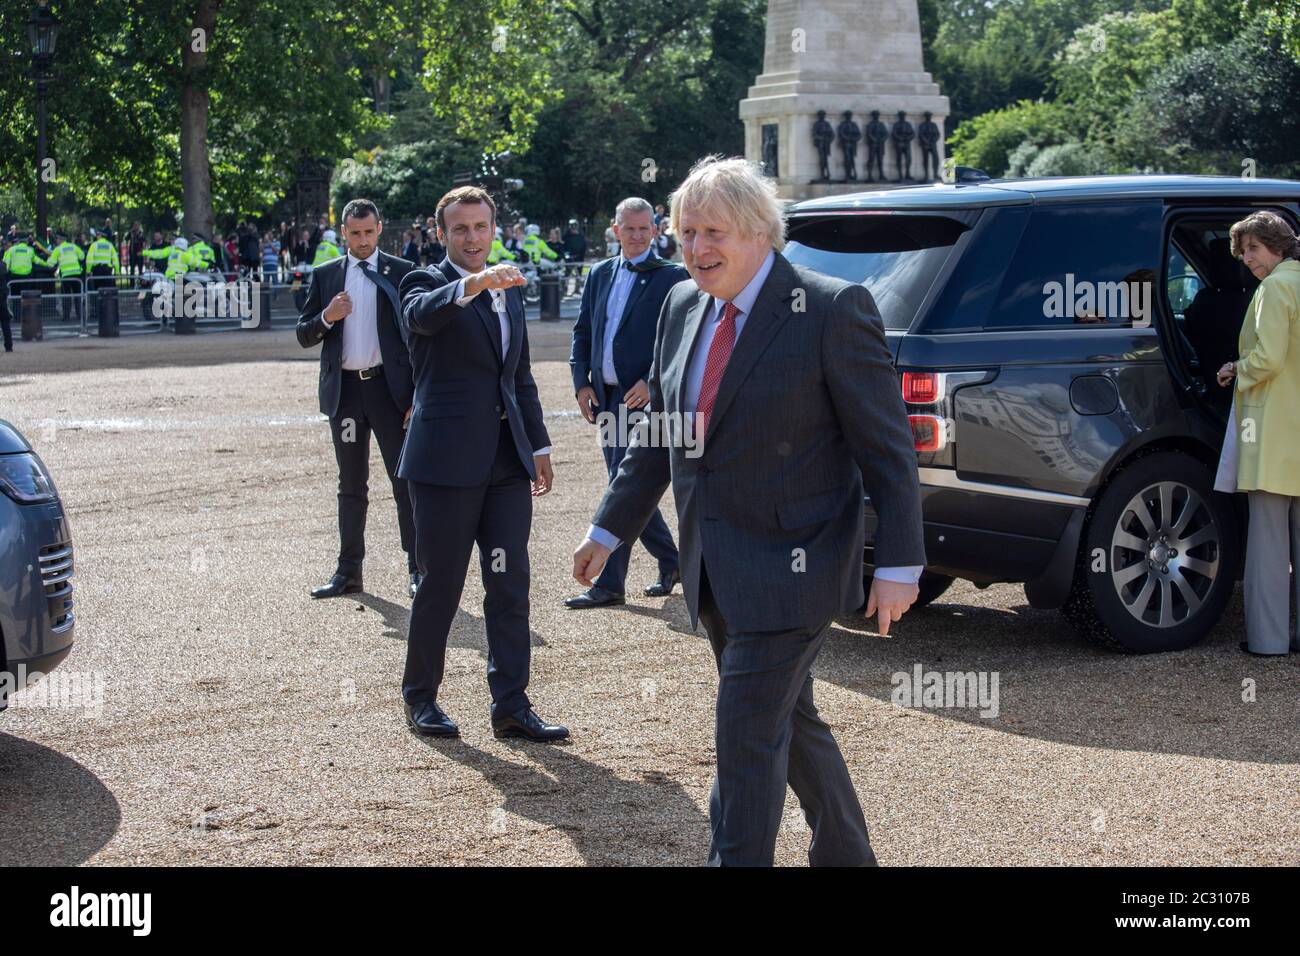 Il primo ministro Boris Johnson (a destra) con il presidente francese Emmanuel Macron prima di guardare un passacardato delle frecce rosse e il loro equivalente francese, la Patrouille de France dalla Horse Guards Parade a Londra durante la sua visita nel Regno Unito. Foto Stock